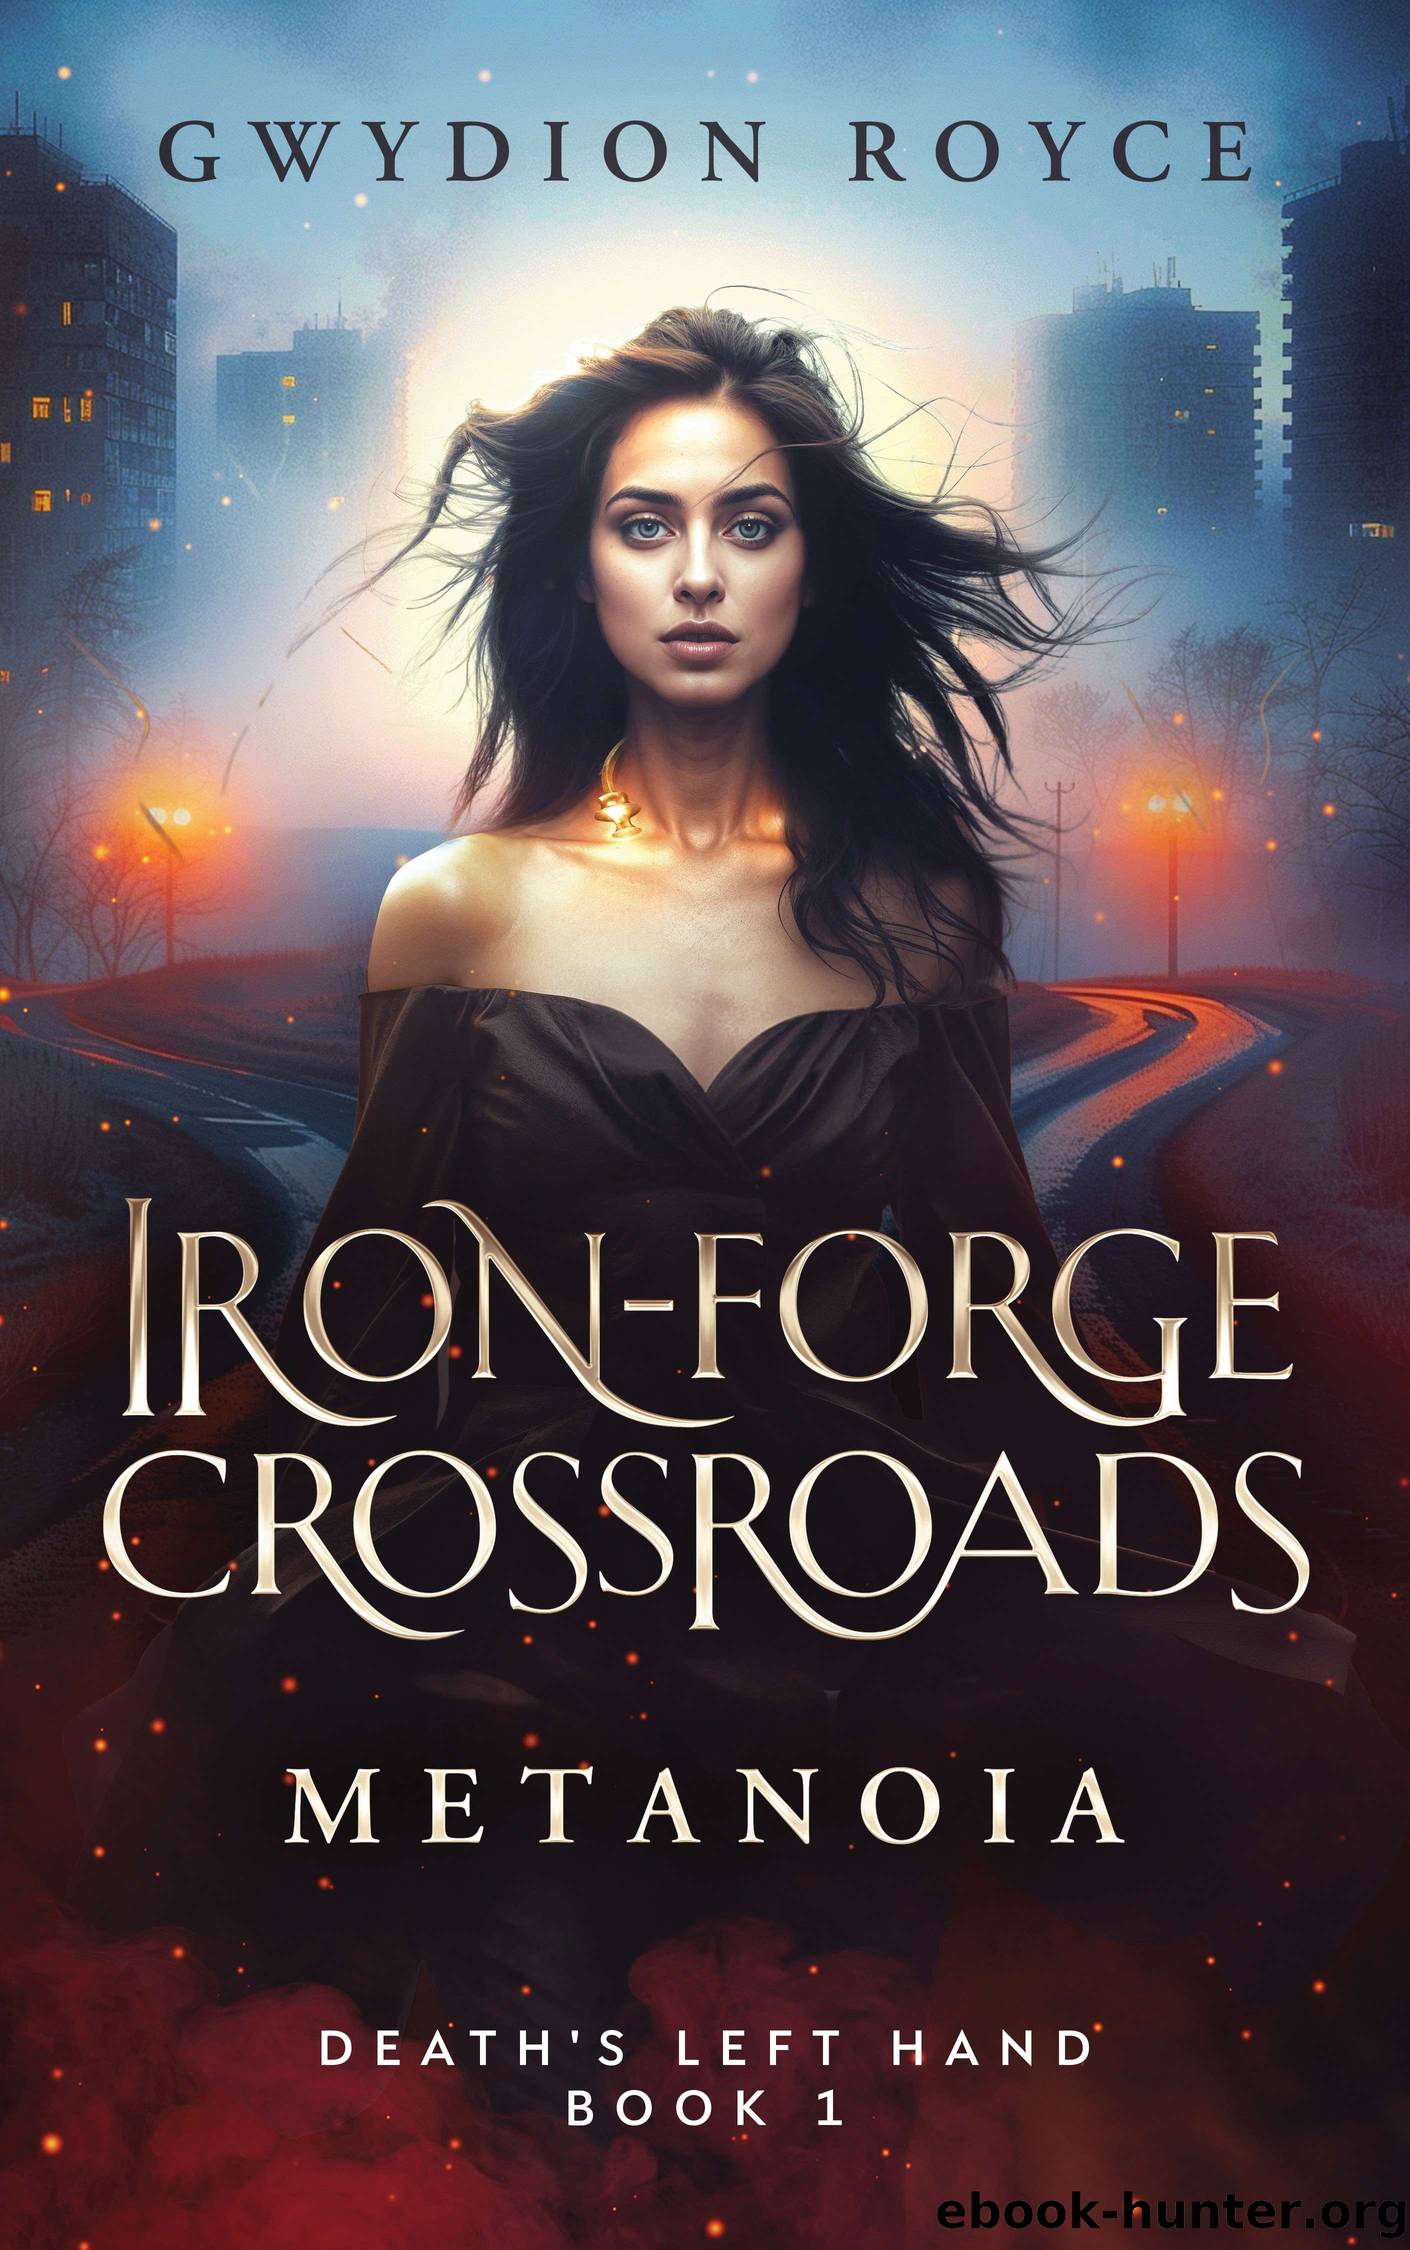 Iron-Forge Crossroads by Gwydion Royce